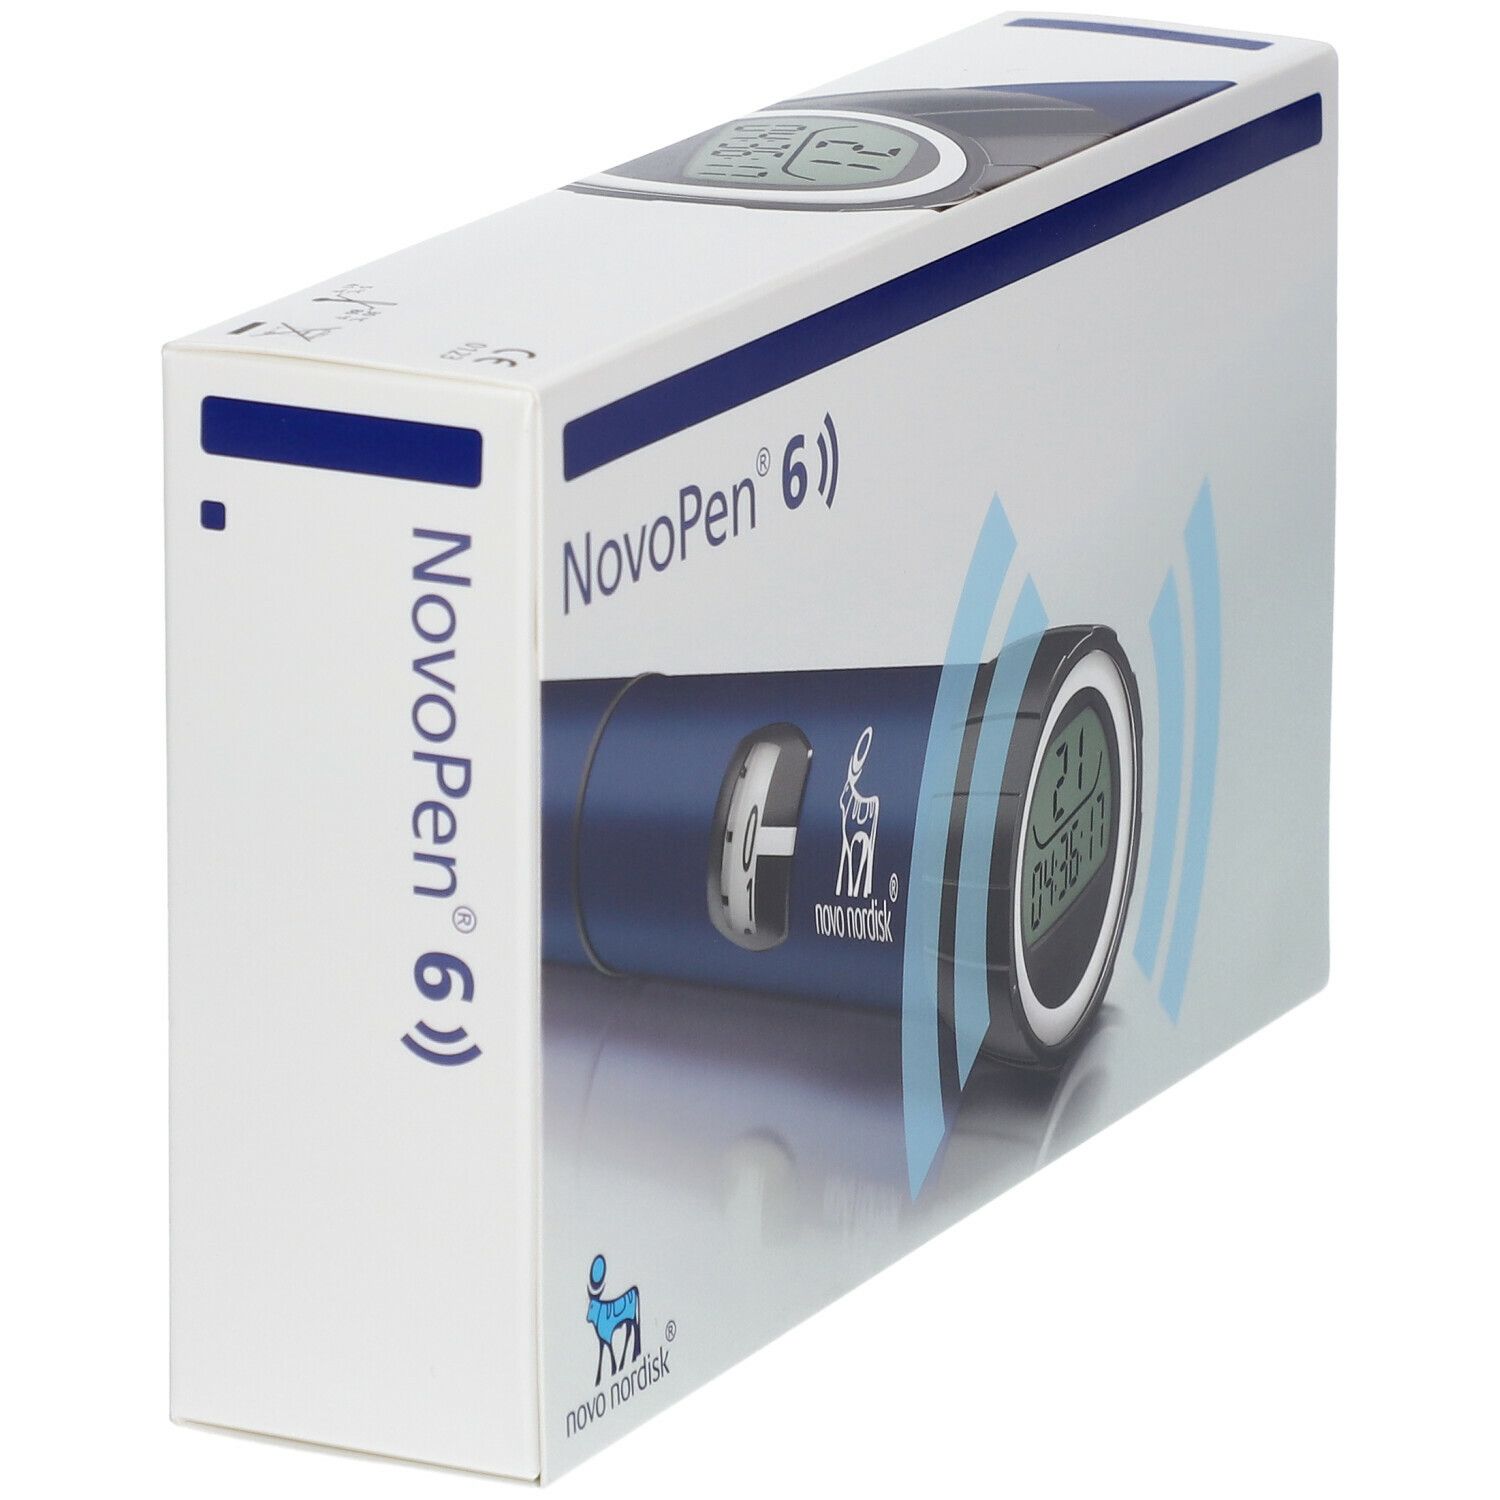 NovoPen® 6 blau